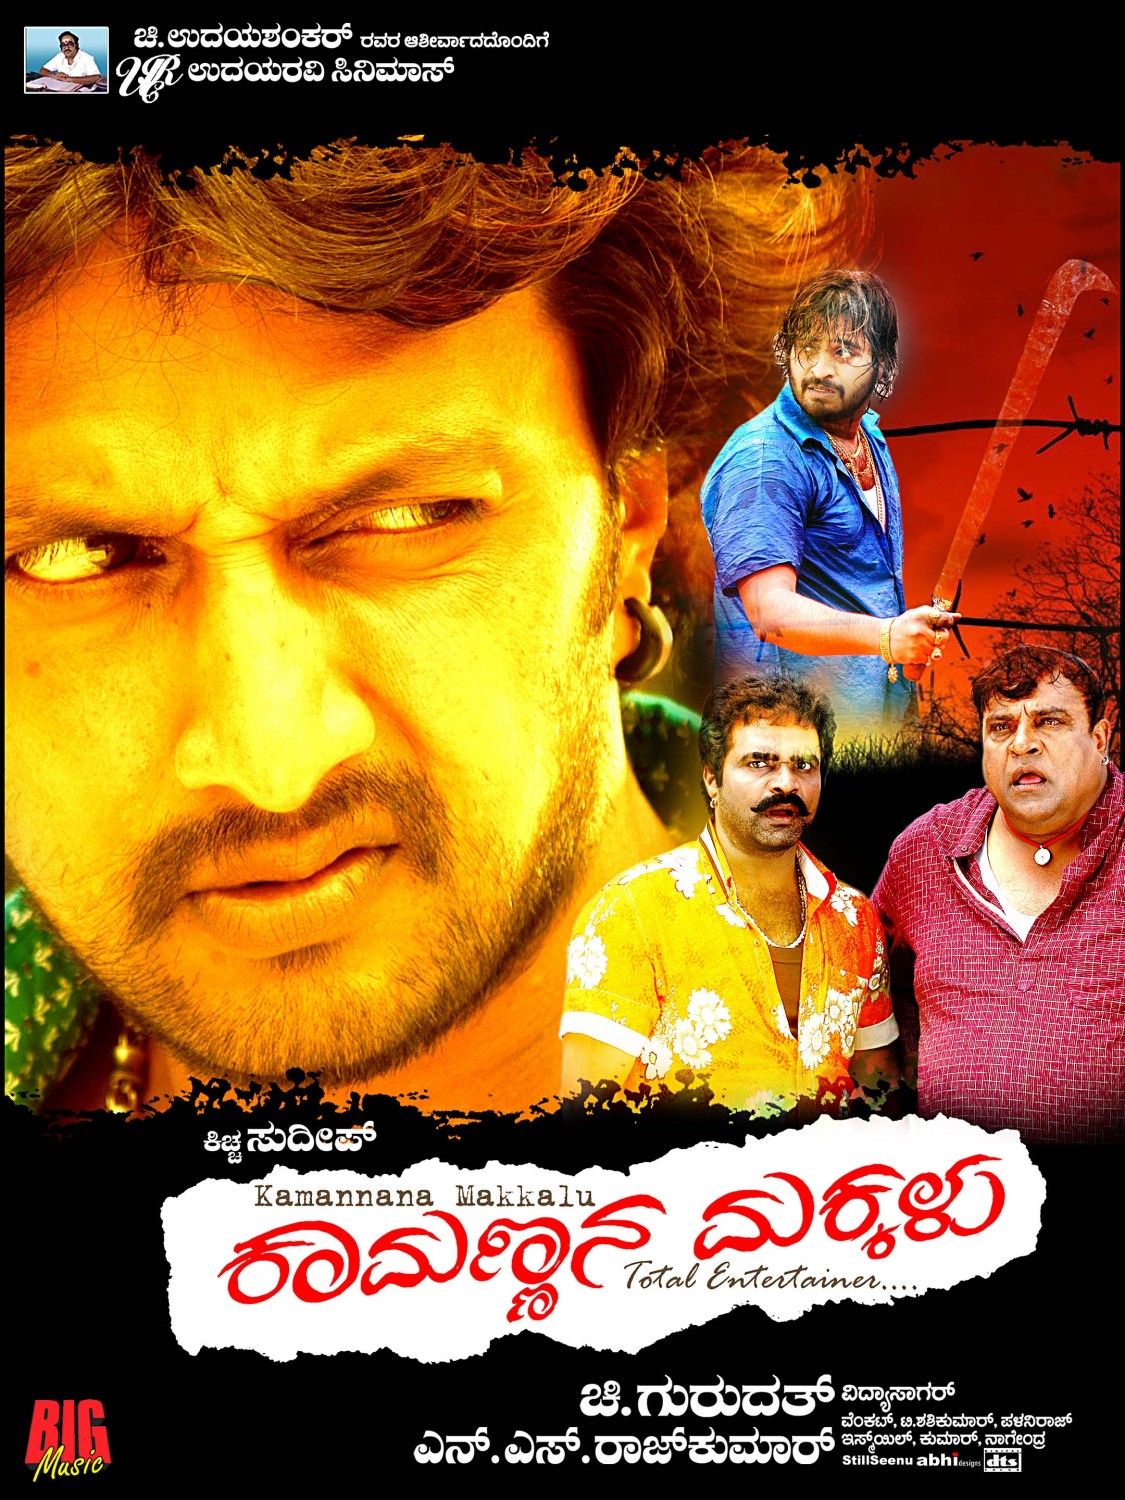 Extra Large Movie Poster Image for Kamannana Makkalu (#8 of 17)